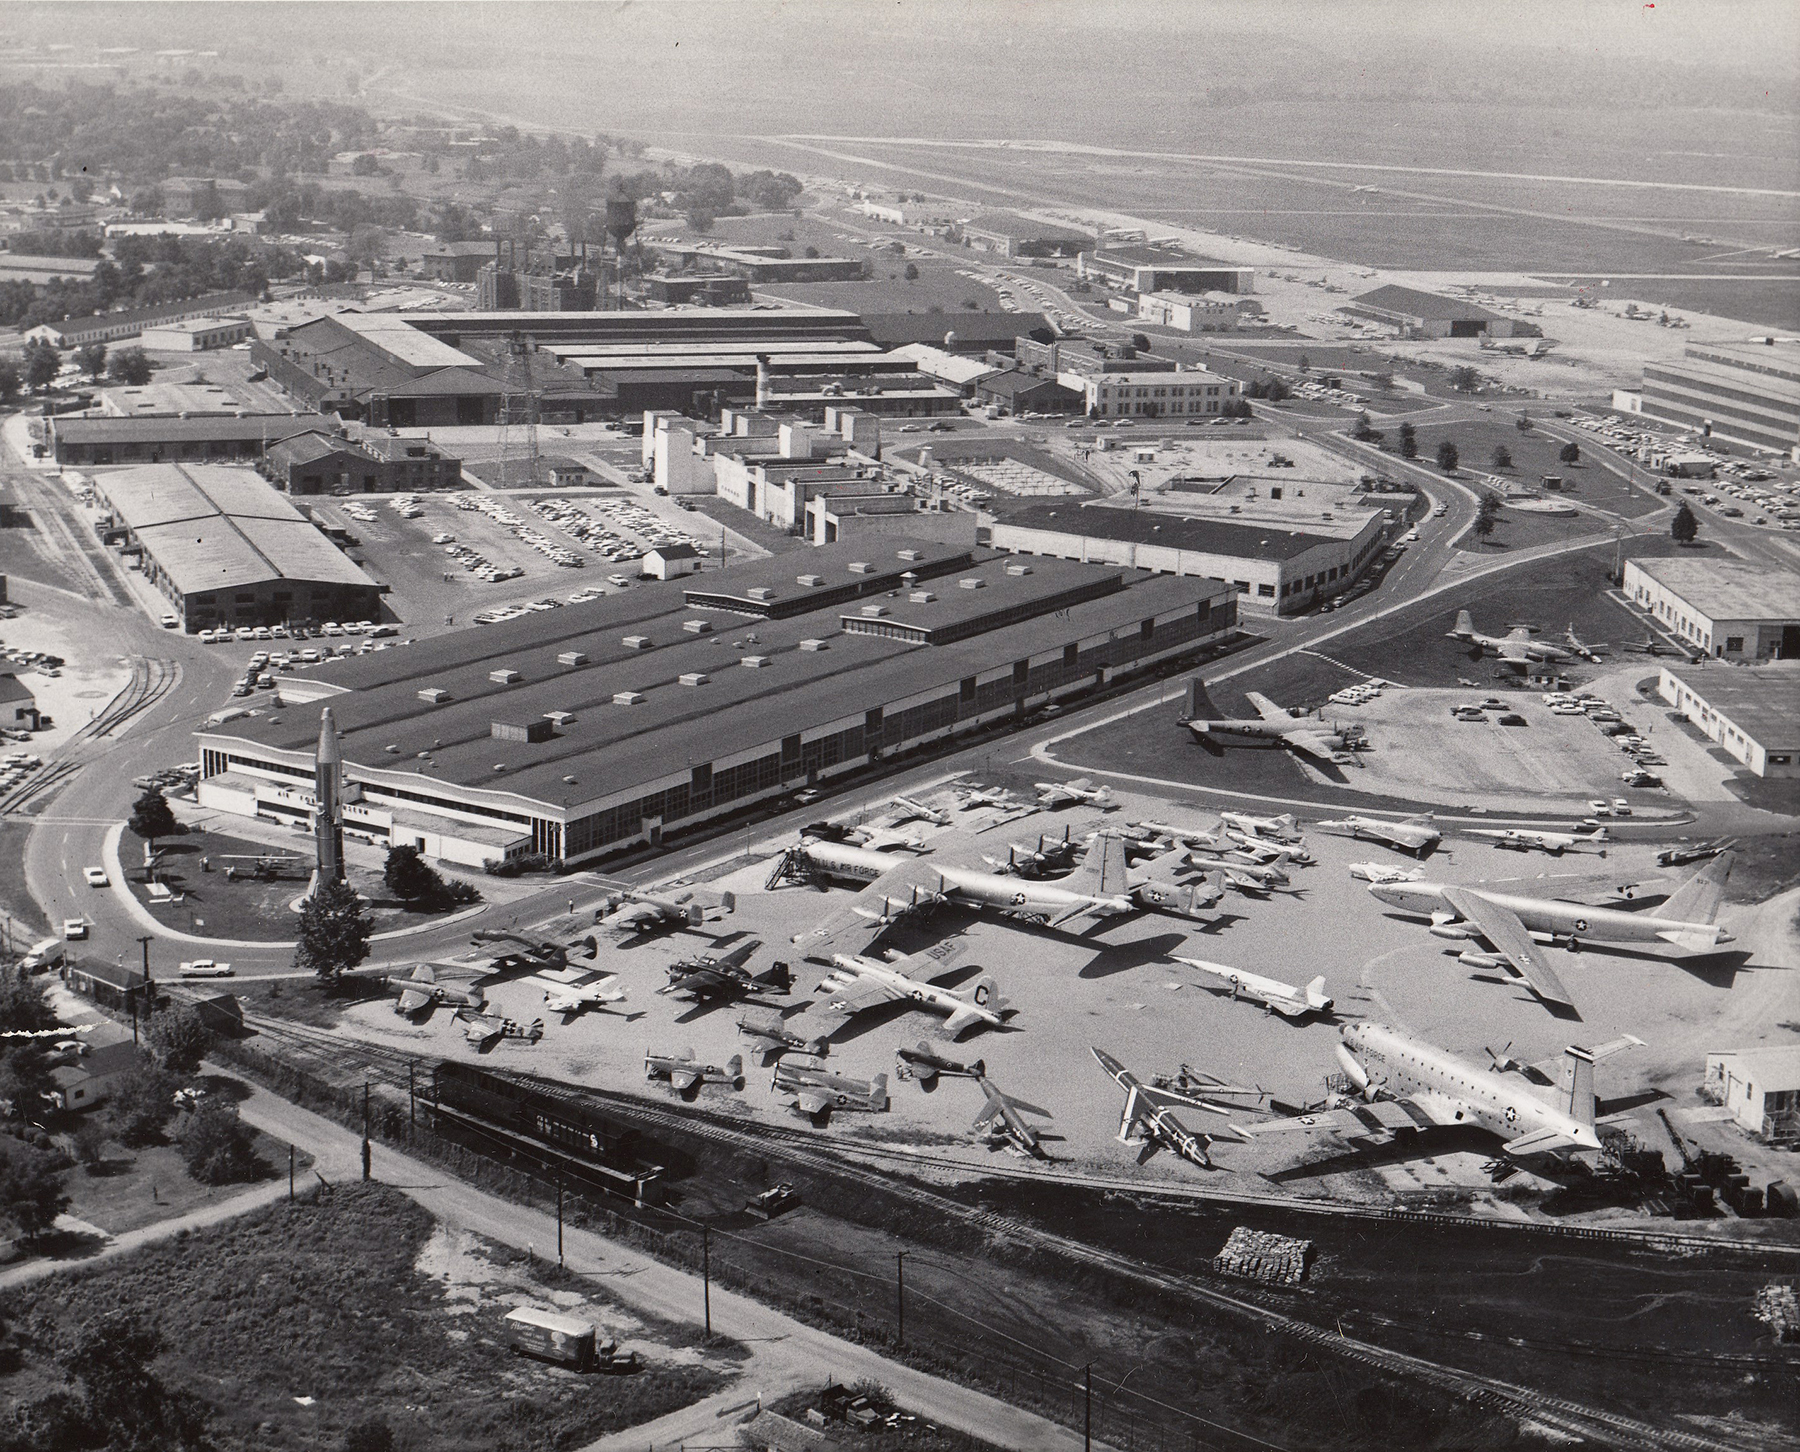 June 1970 Aerial view